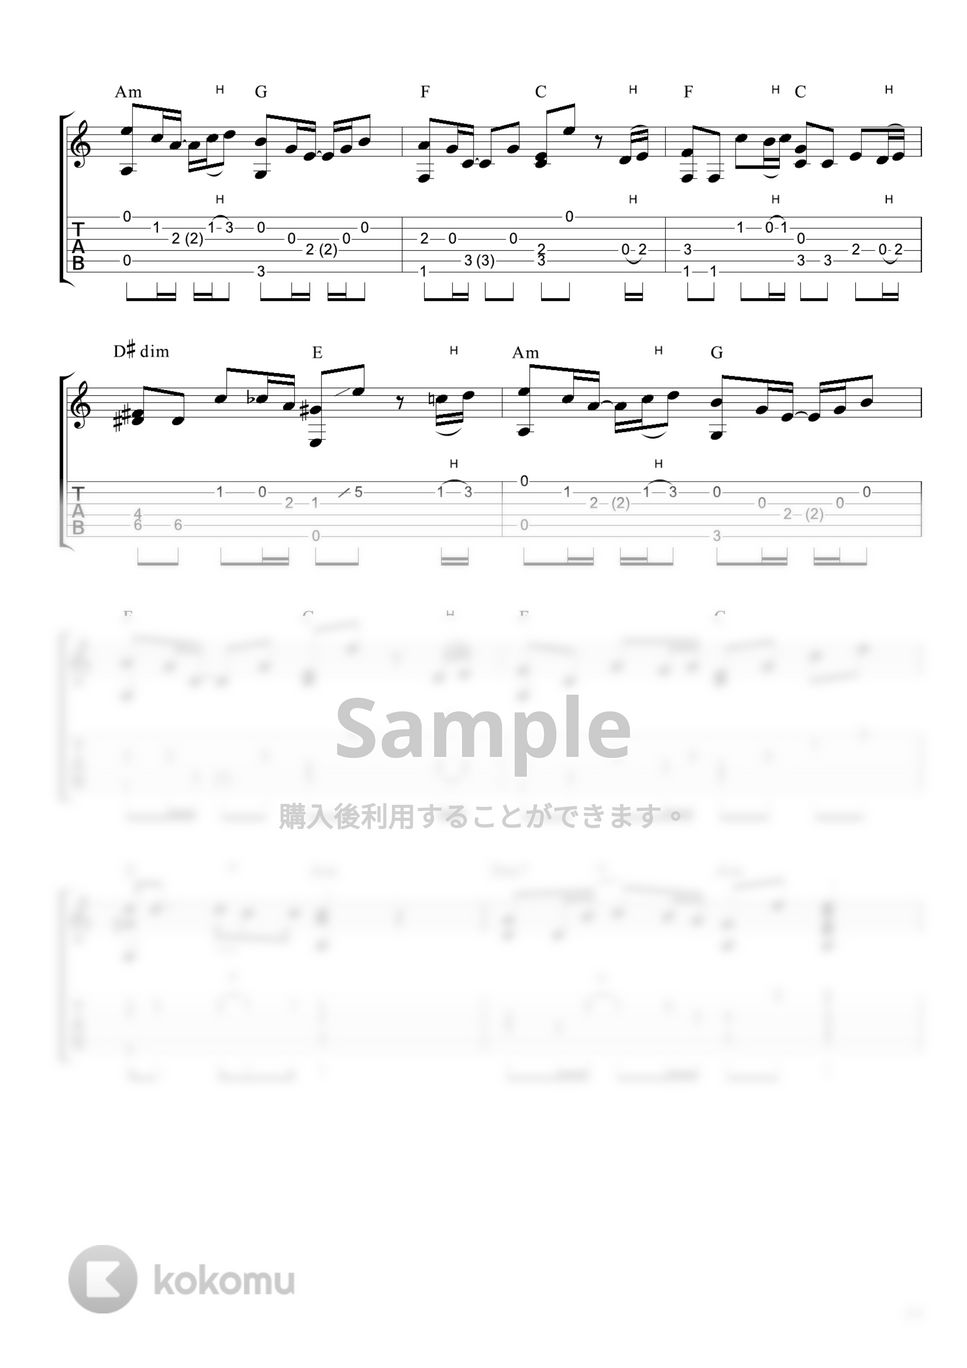 米津玄師 - Lemon (ソロギター / 初級〜中級) by Strings Guitar School